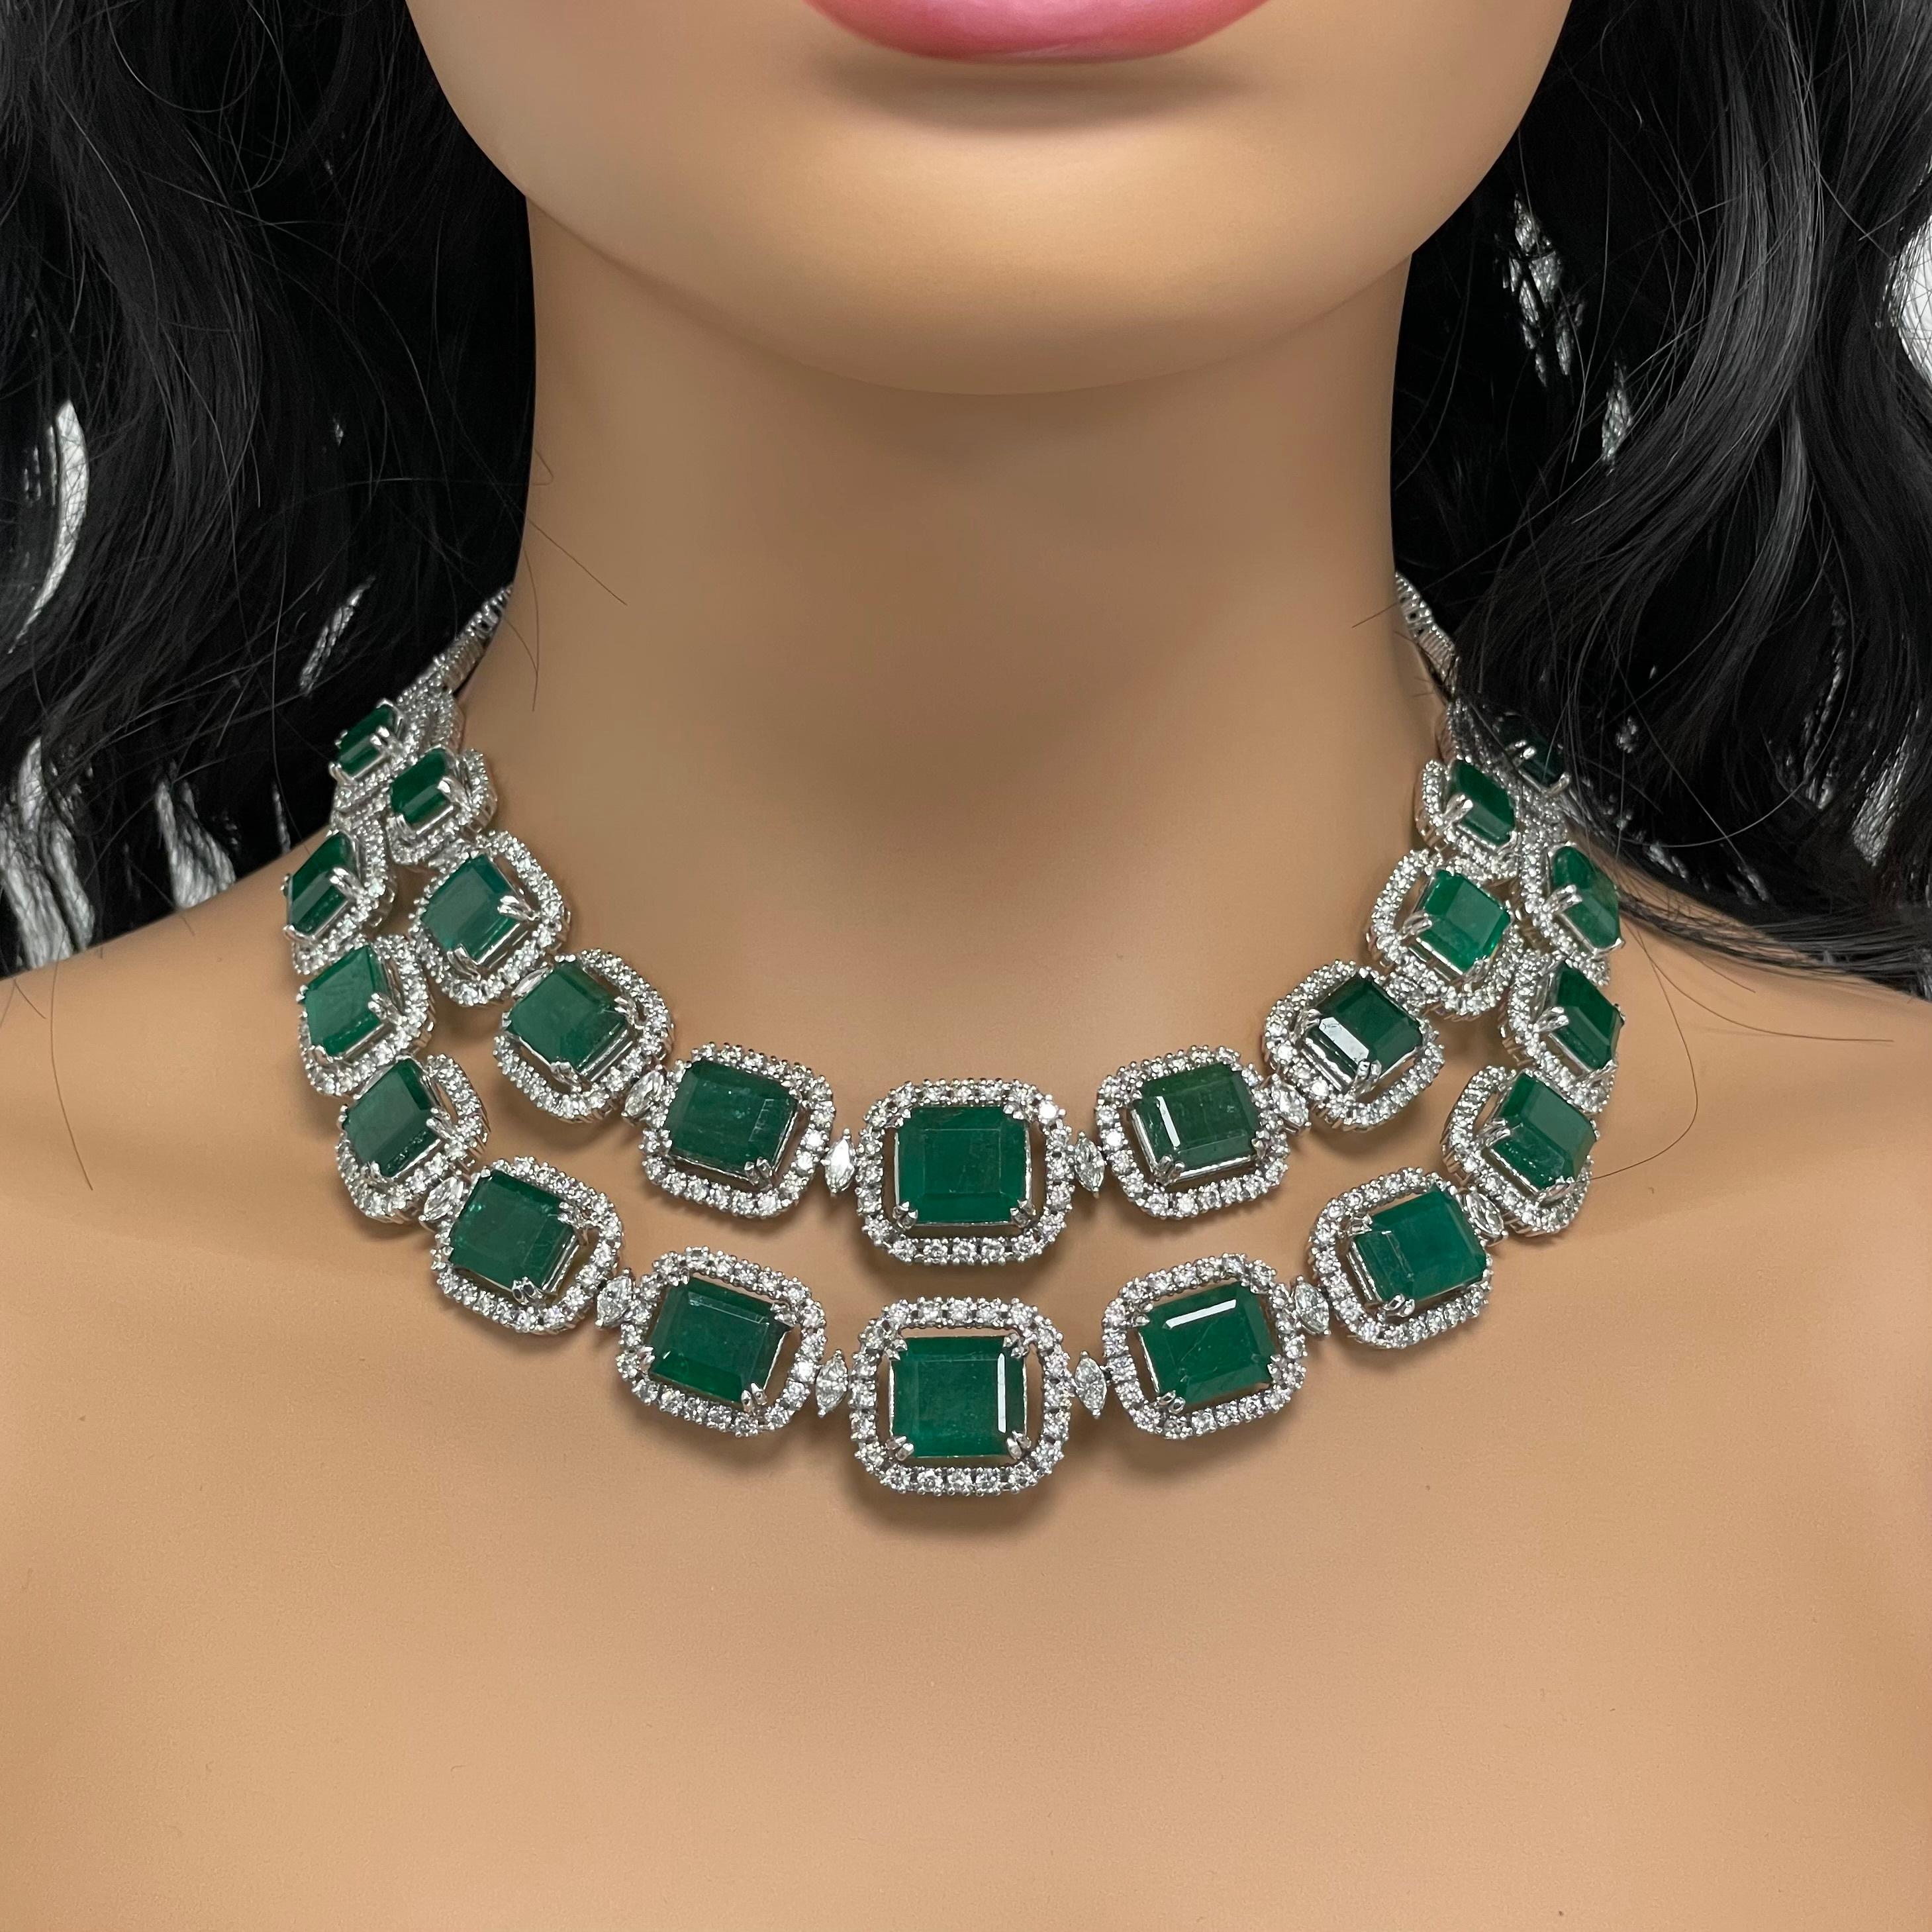 Die Renee Emerald & Diamond Necklace ist ein einzigartiges und luxuriöses, doppelreihiges Collier mit königlich grünen Smaragden und Diamanten in Weißgold. 

Edelsteine Typ: Smaragd
Form der Edelsteine: Rechteckig
Gewicht der Edelsteine: 135.78